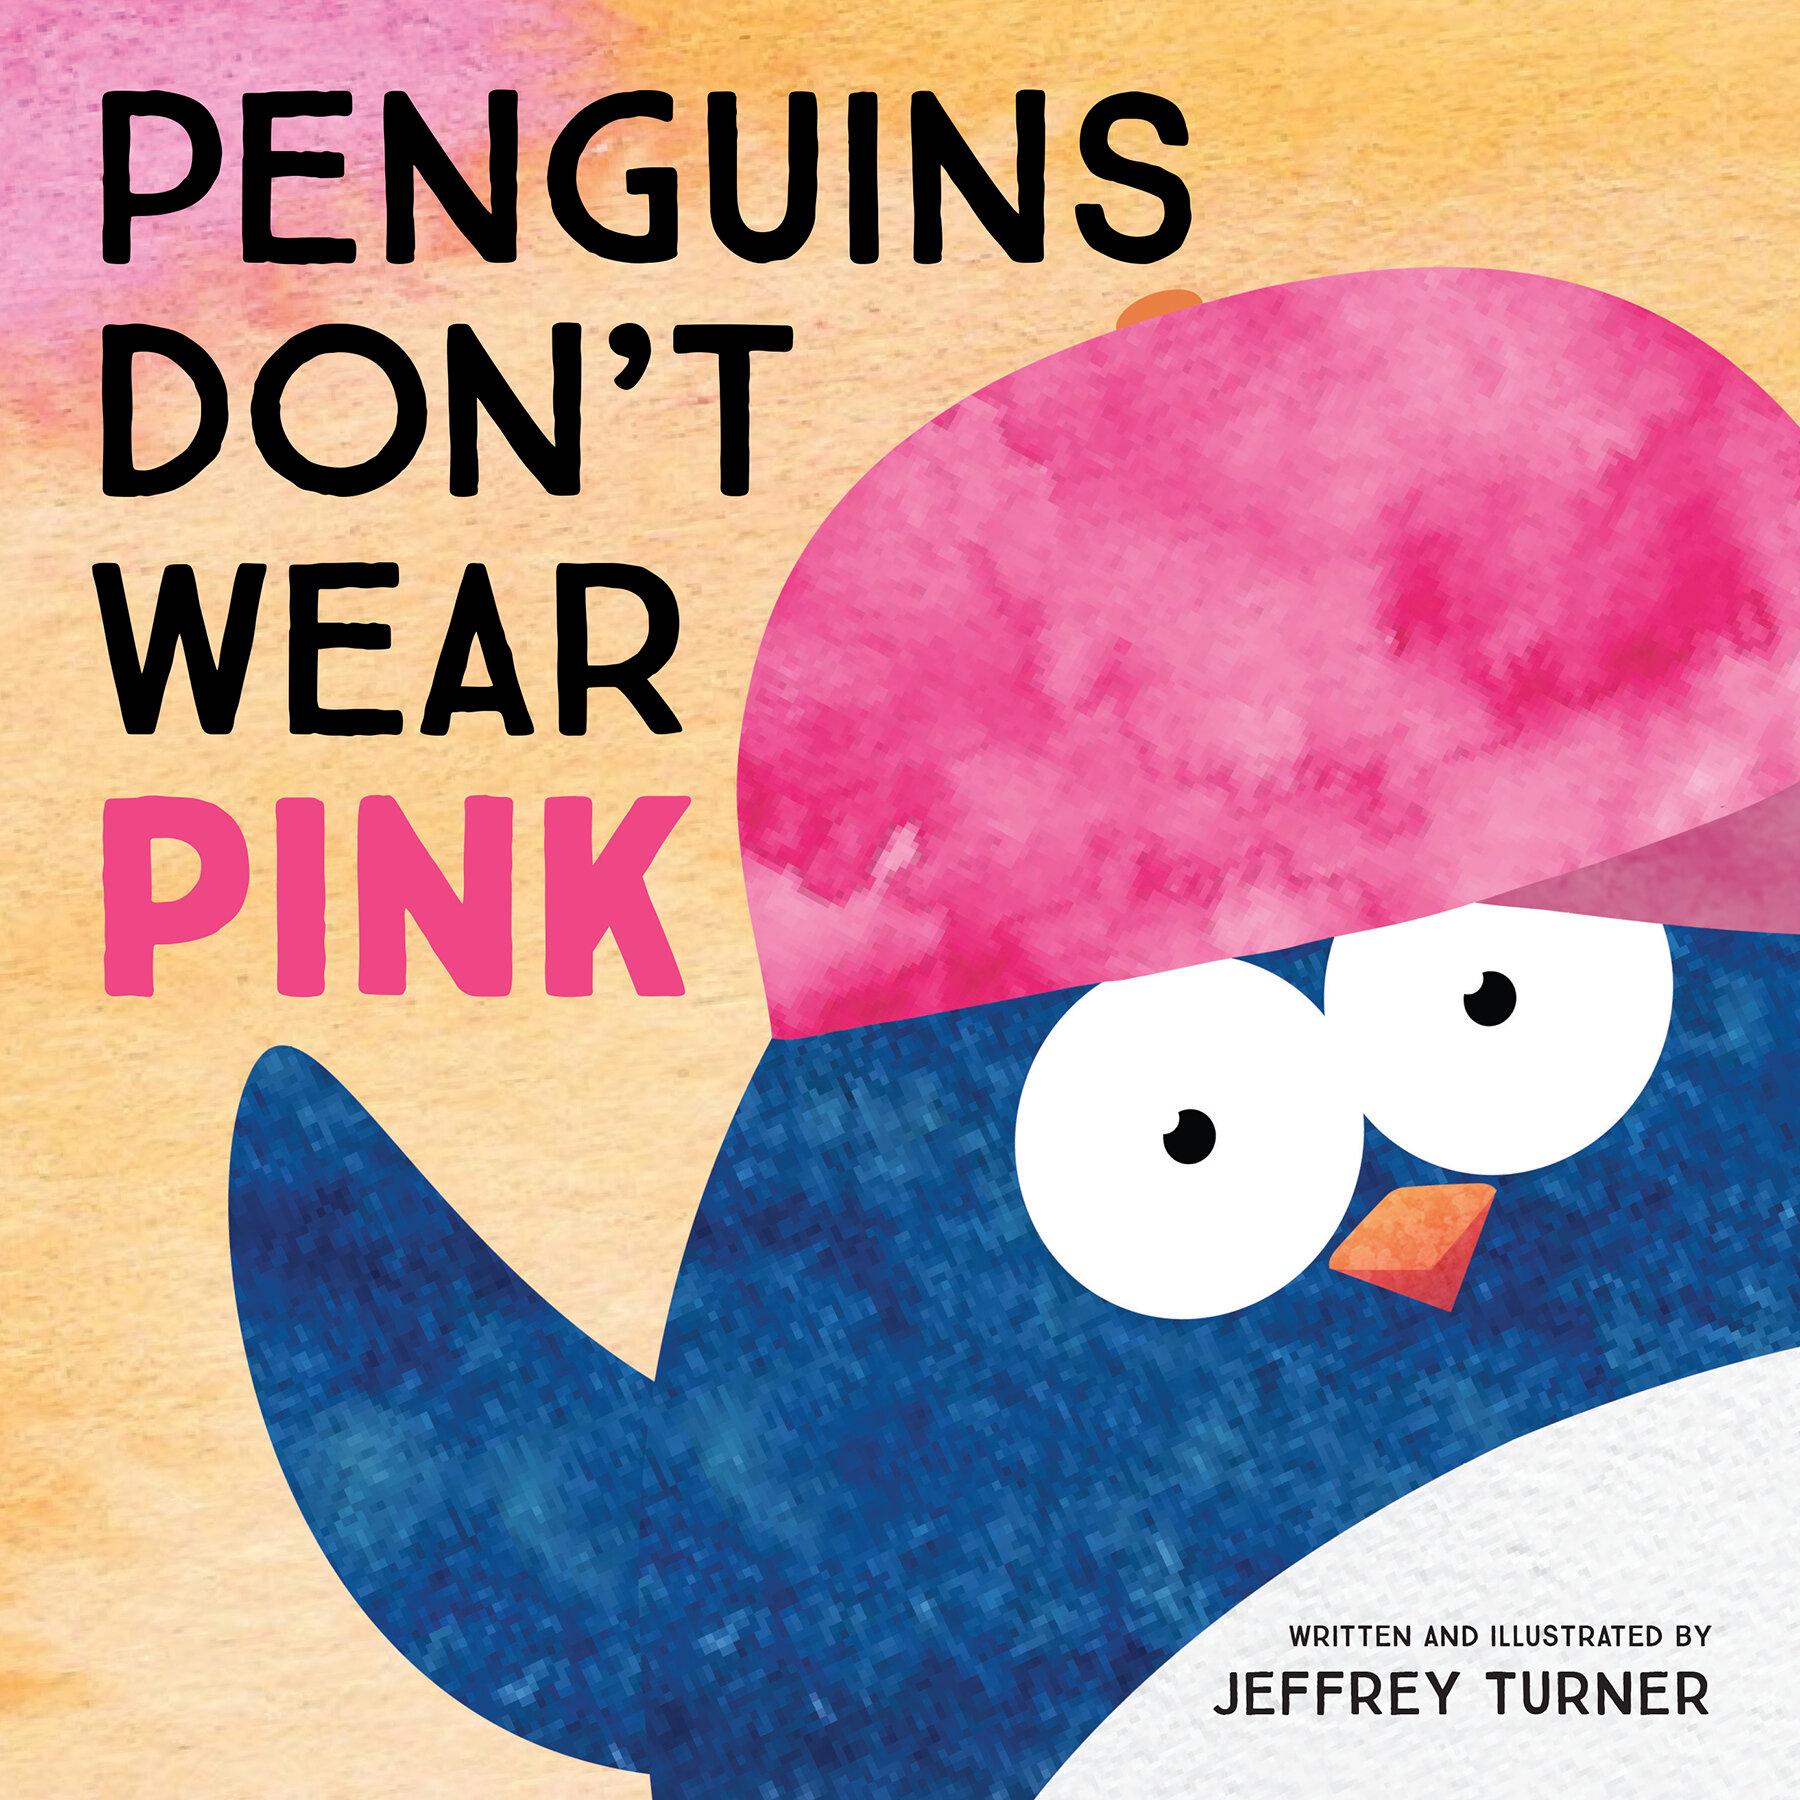 Penguins Don't Wear Pink